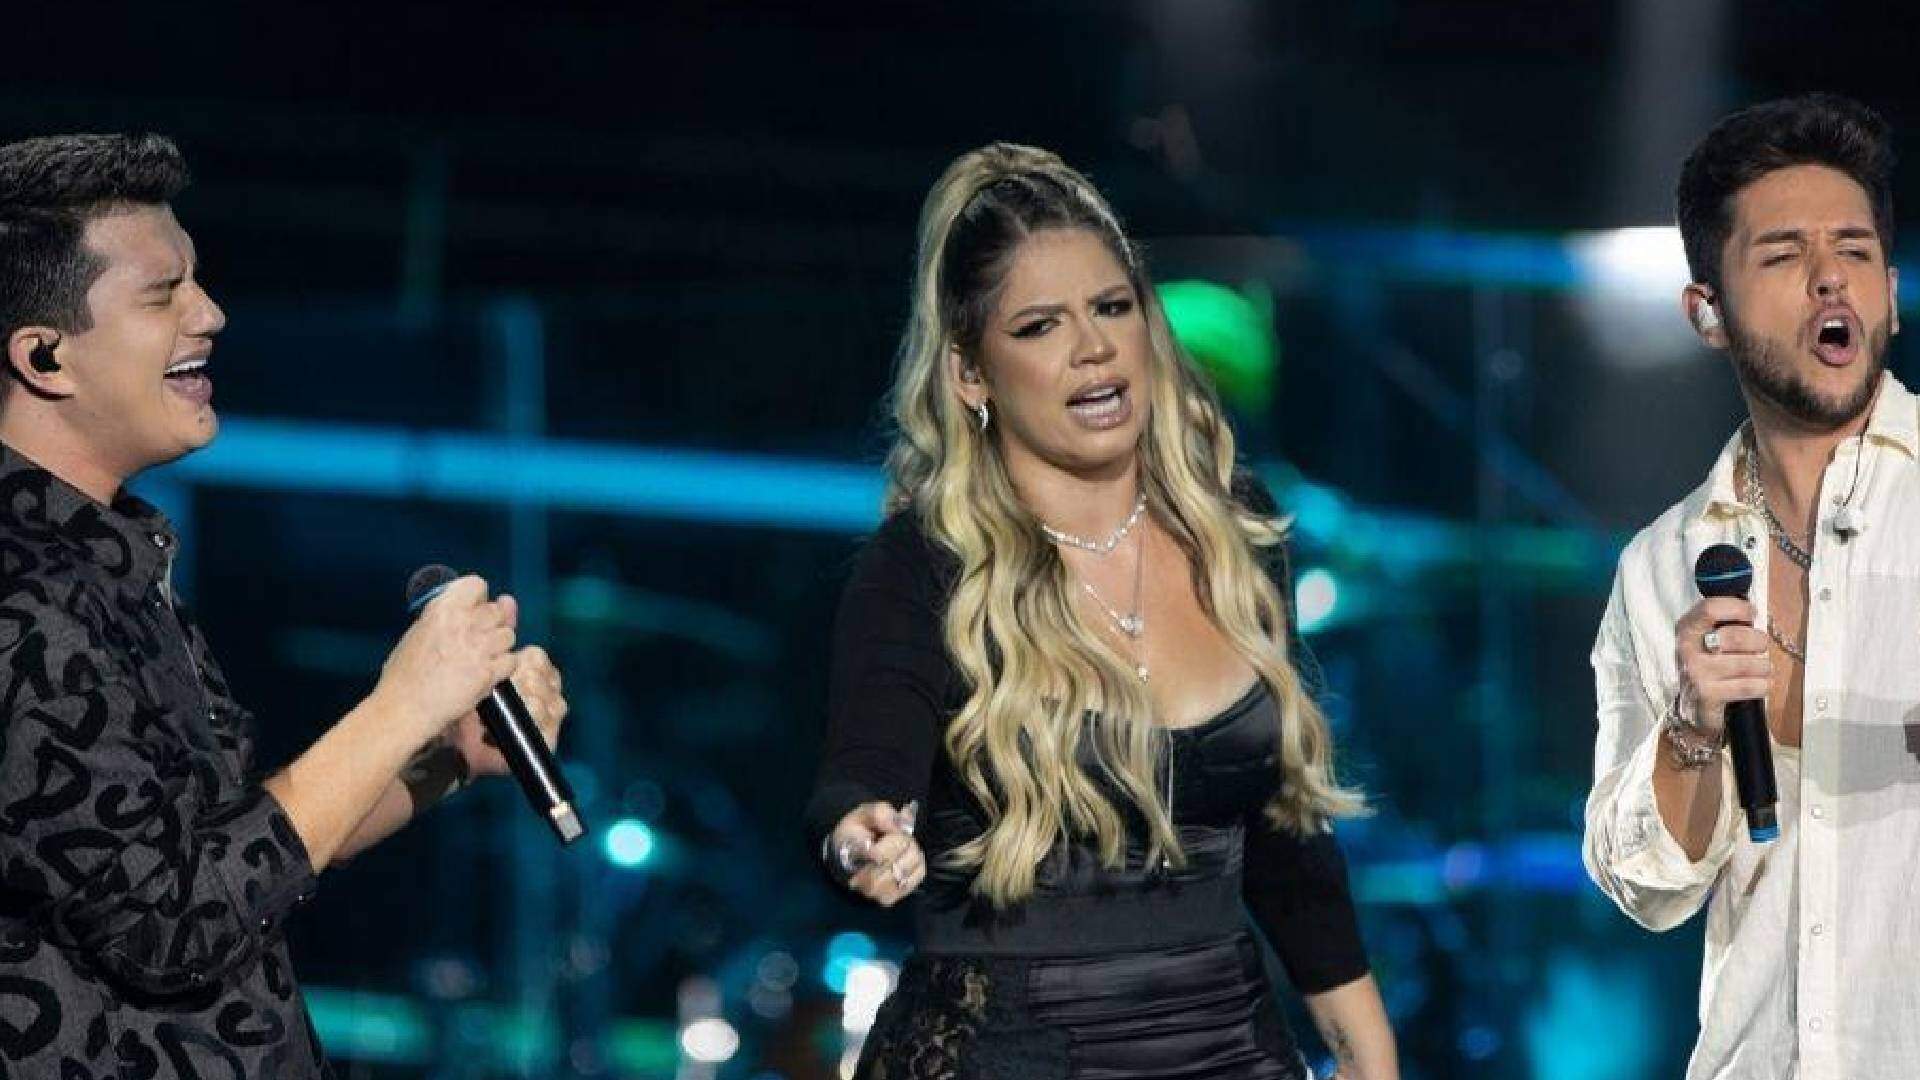 Lançamento musical póstumo de Marília Mendonça agita web e emociona fãs: “RAINHA!” - Metropolitana FM